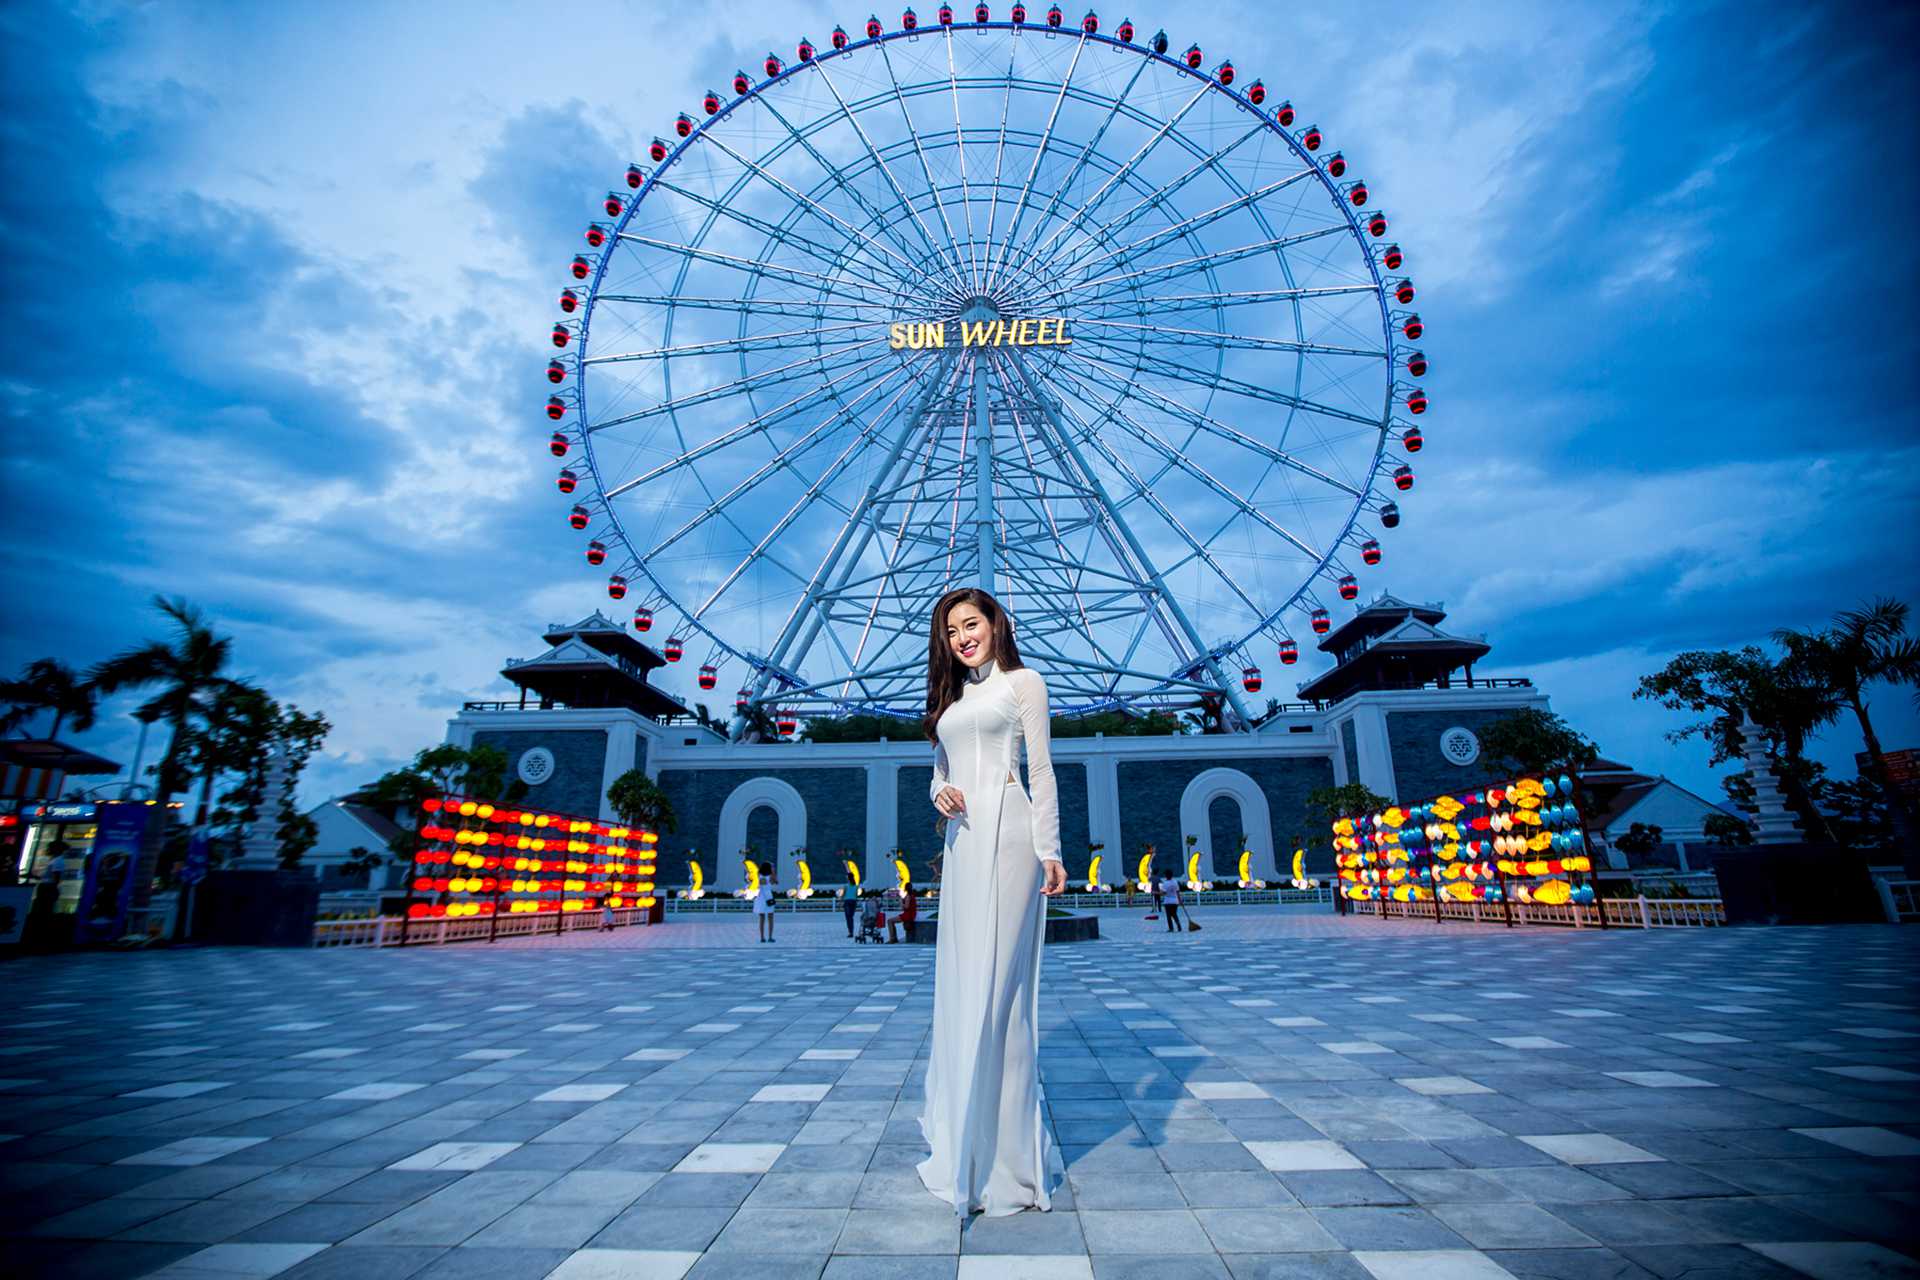 vong du quay Sun Wheel khong lo o cong vien chau a - Top 10 địa điểm mới nhất ở Đà Nẵng 2020 nên ghé